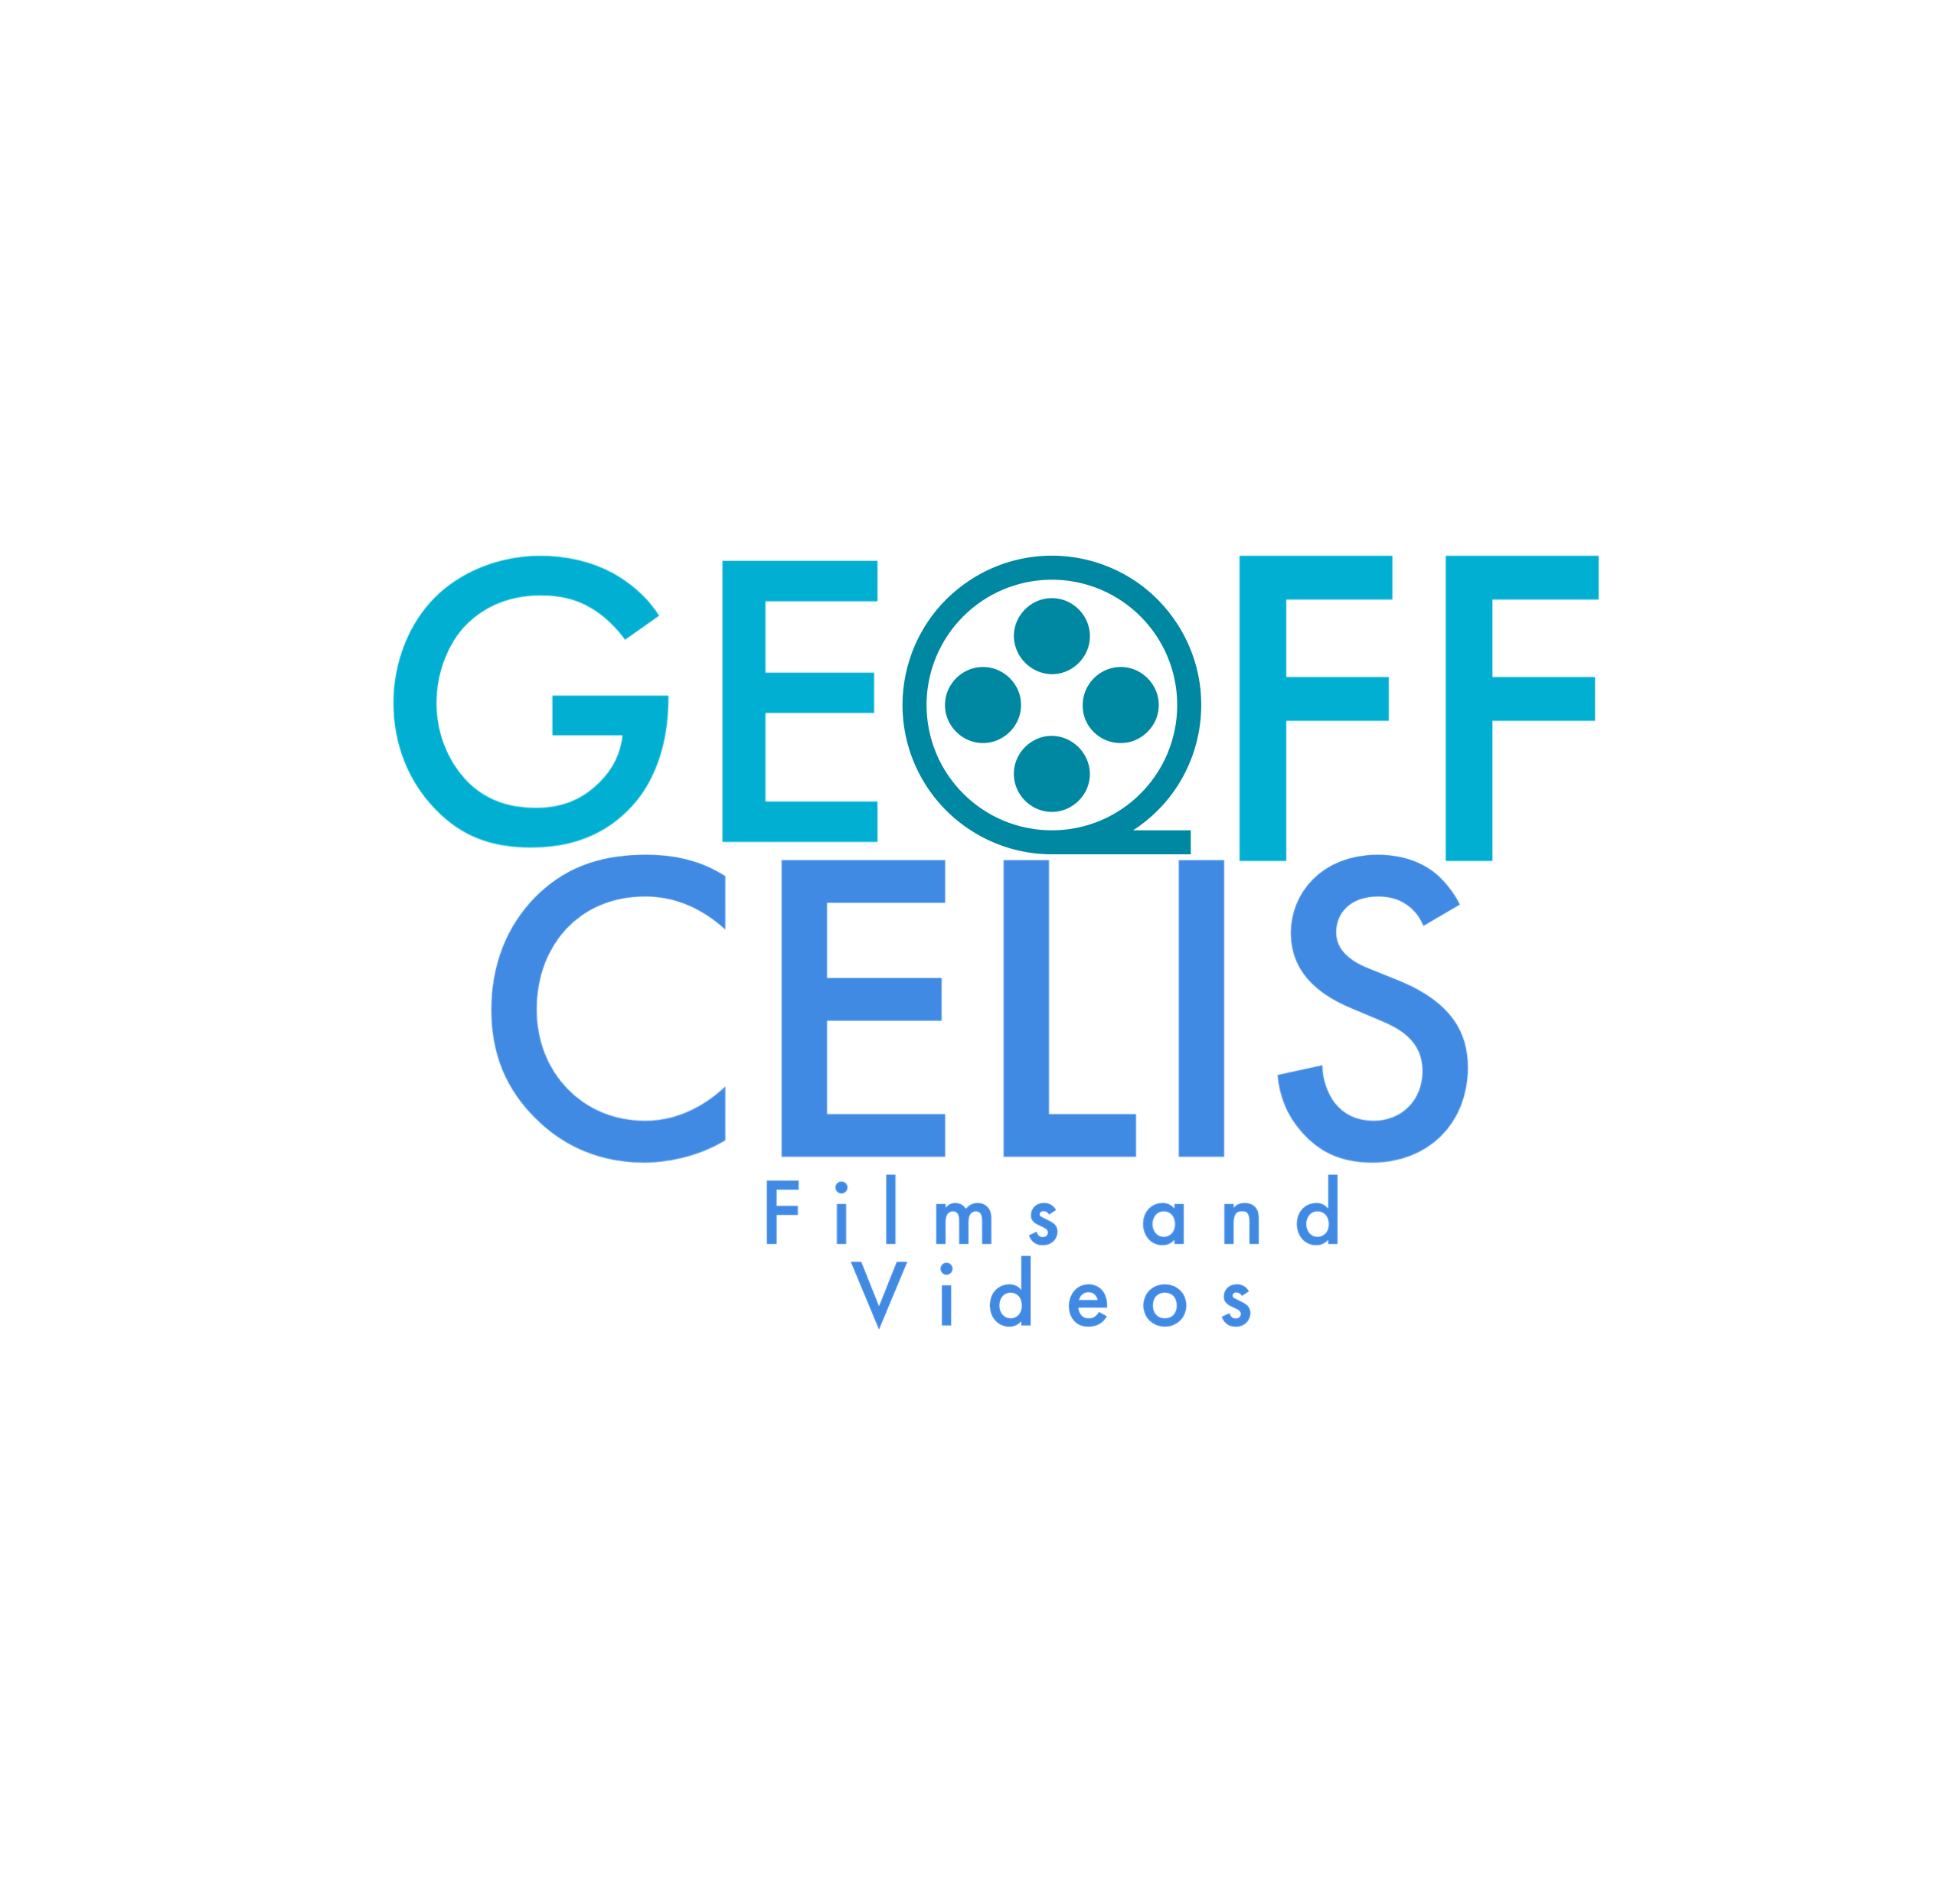 Geoff Celis – Films and Videos